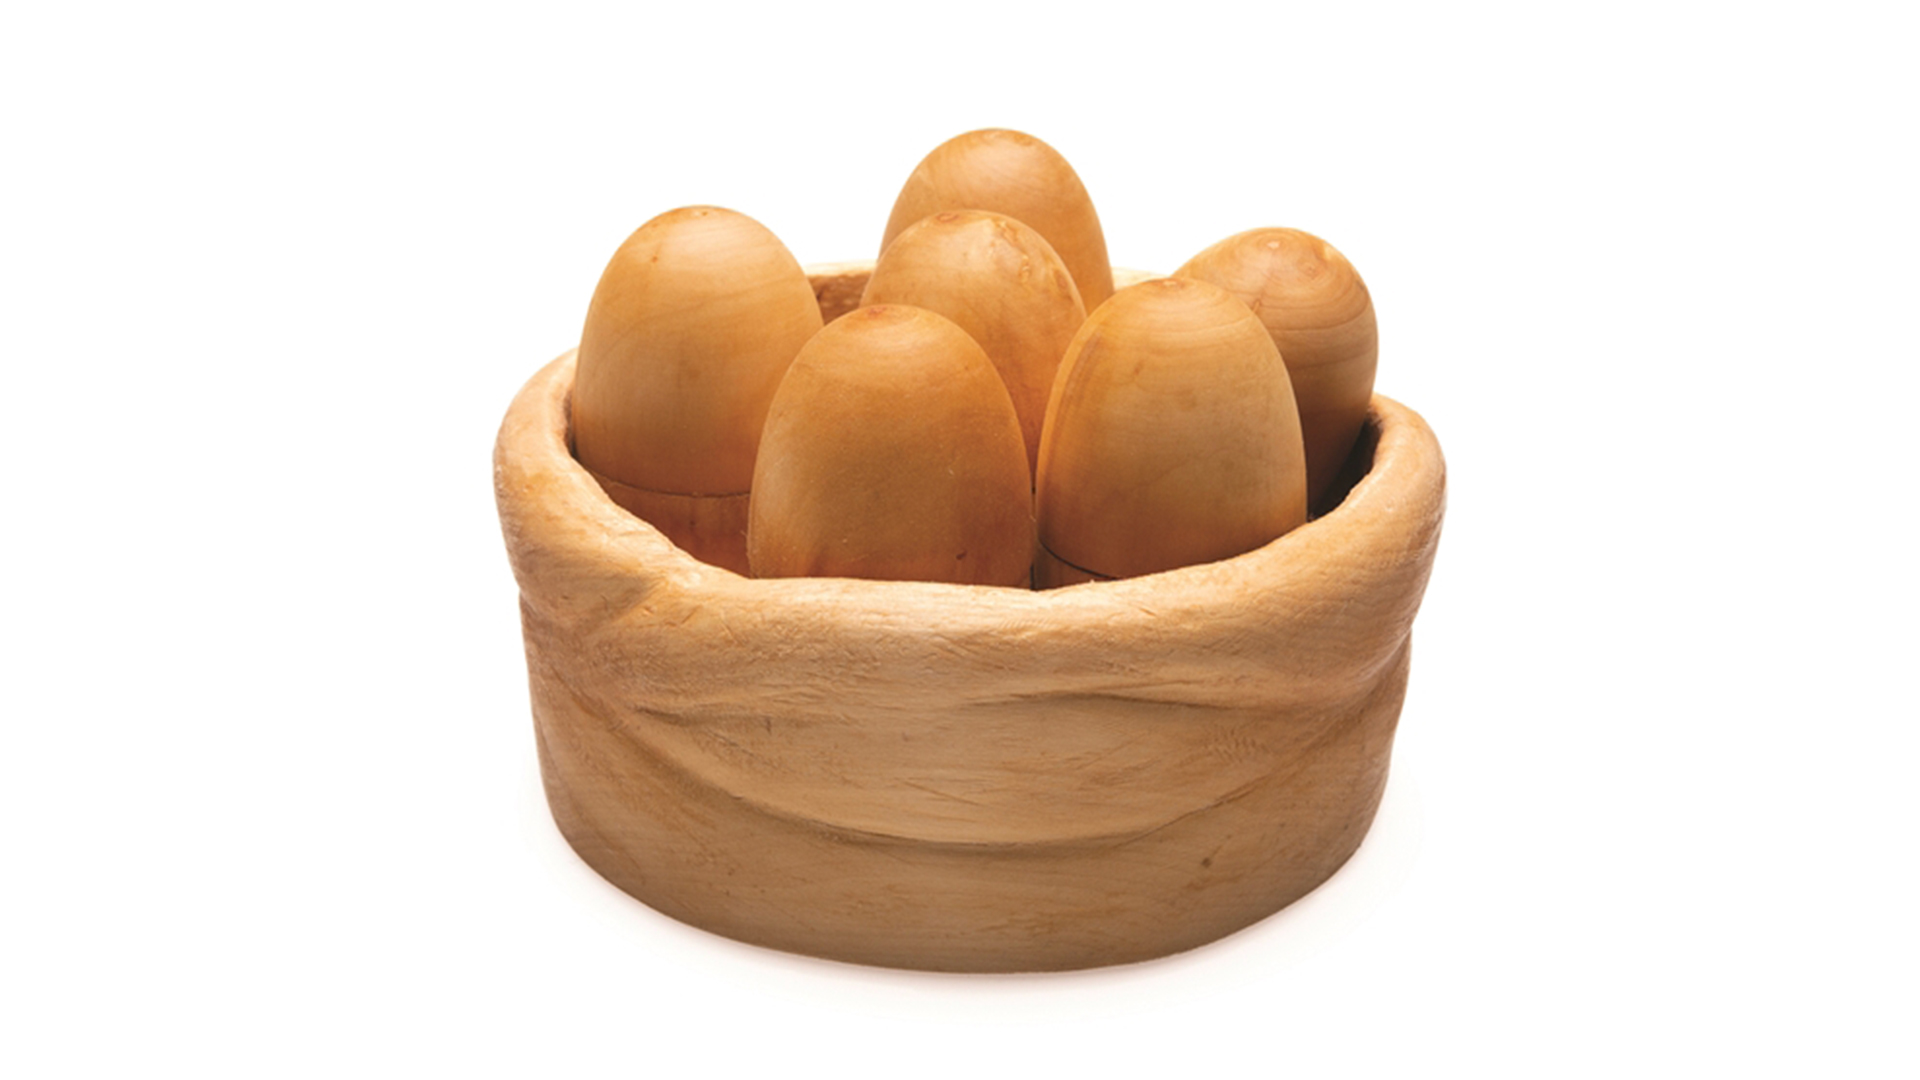 Six wooden eggs sitting vertically in round wooden nest